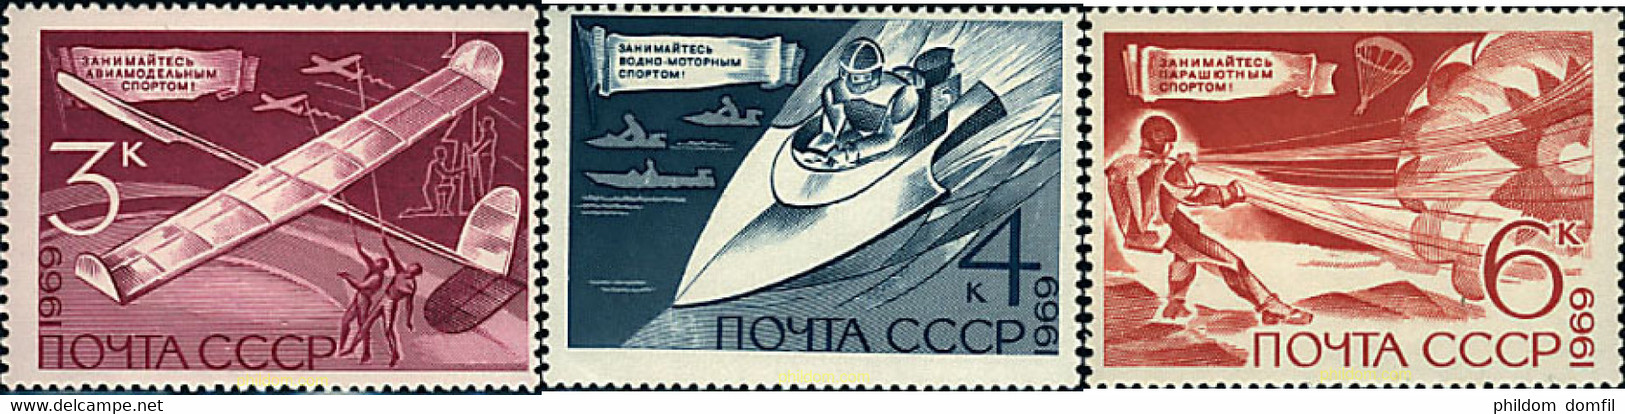 63202 MNH UNION SOVIETICA 1969 DEPORTES TECNICOS - Fallschirmspringen